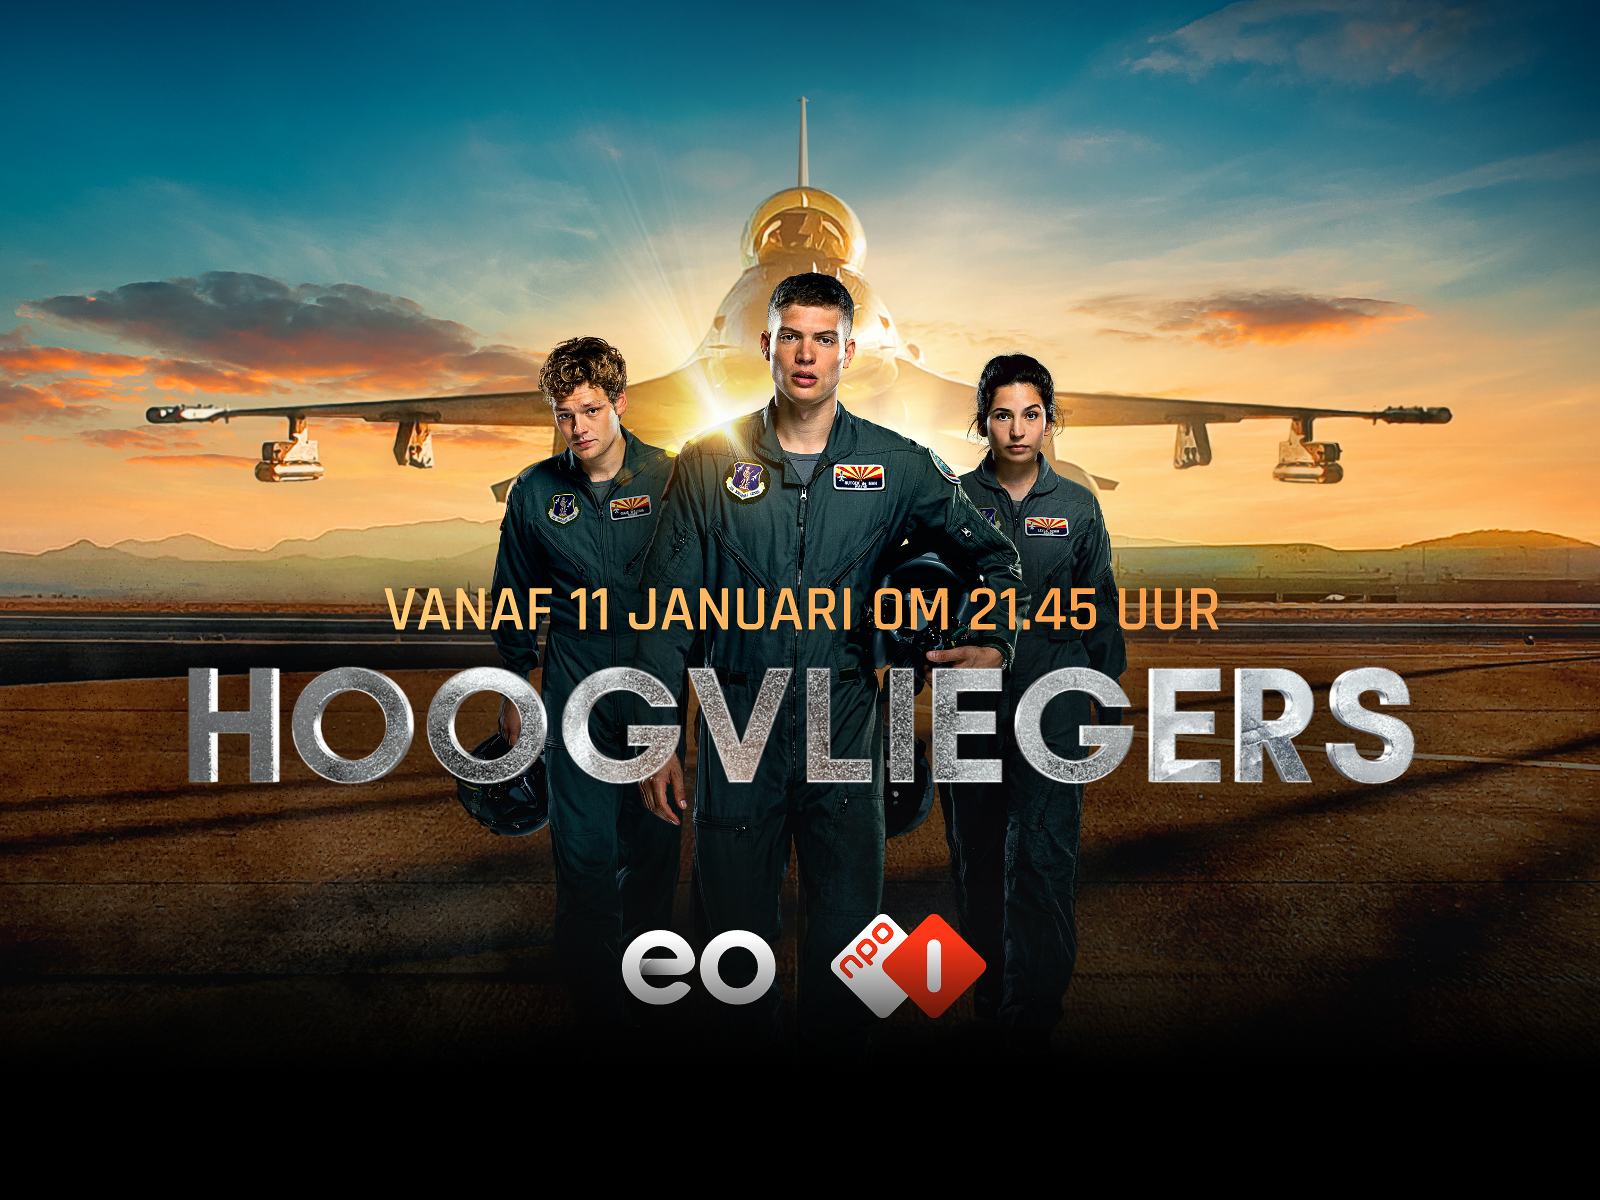 [心得] 高飛 High-Flyers/Hoogvliegers (雷) NPO 荷蘭飛官劇